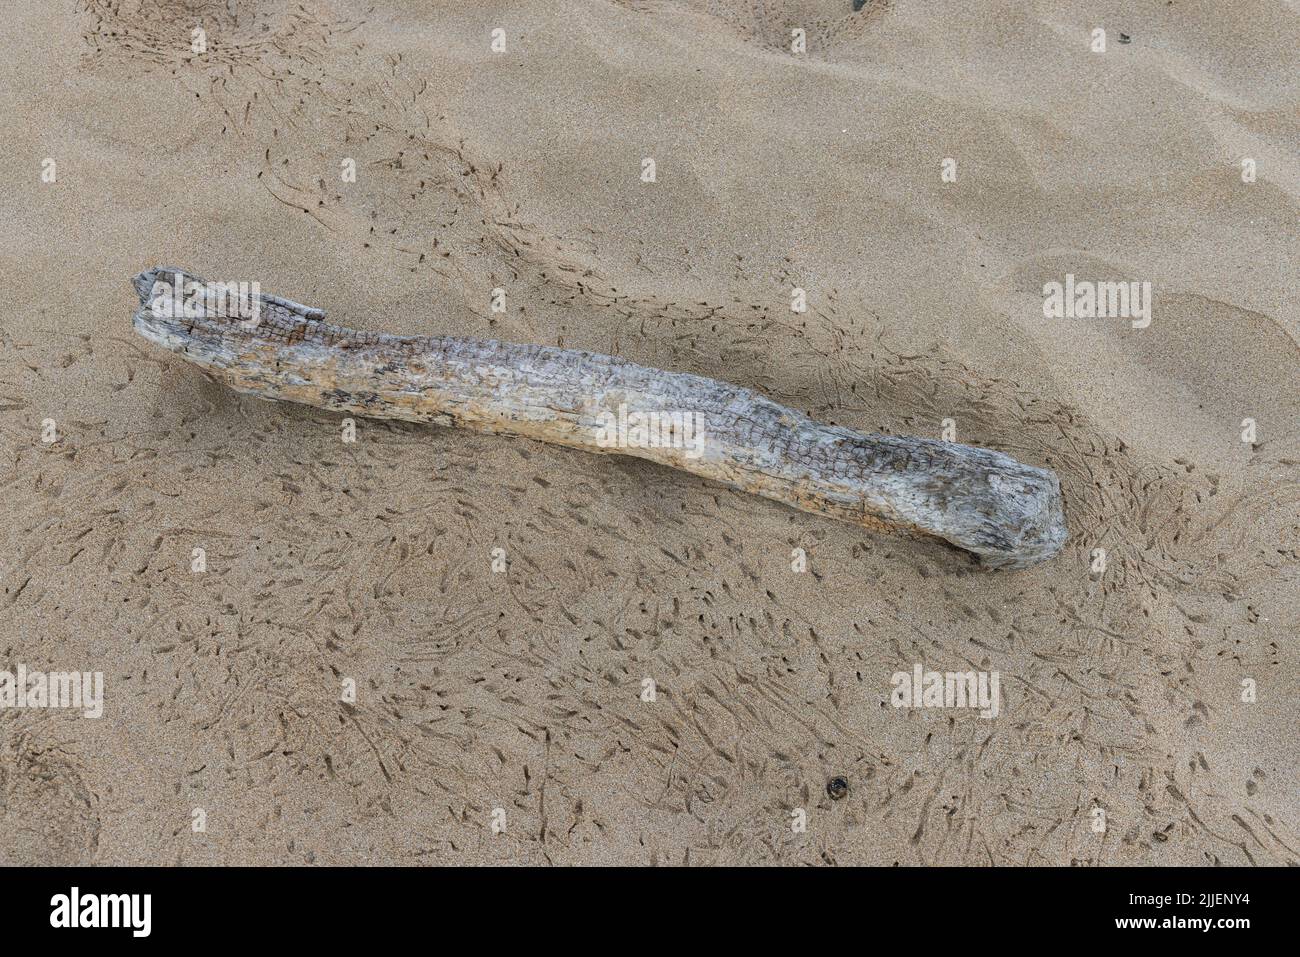 geisterkrabbe, Geisterkrabbe (Ocypodidae), Spuren nächtlicher Aktivität im Sand neben Treibholz, USA, Hawaii, Maui, Kihei Stockfoto